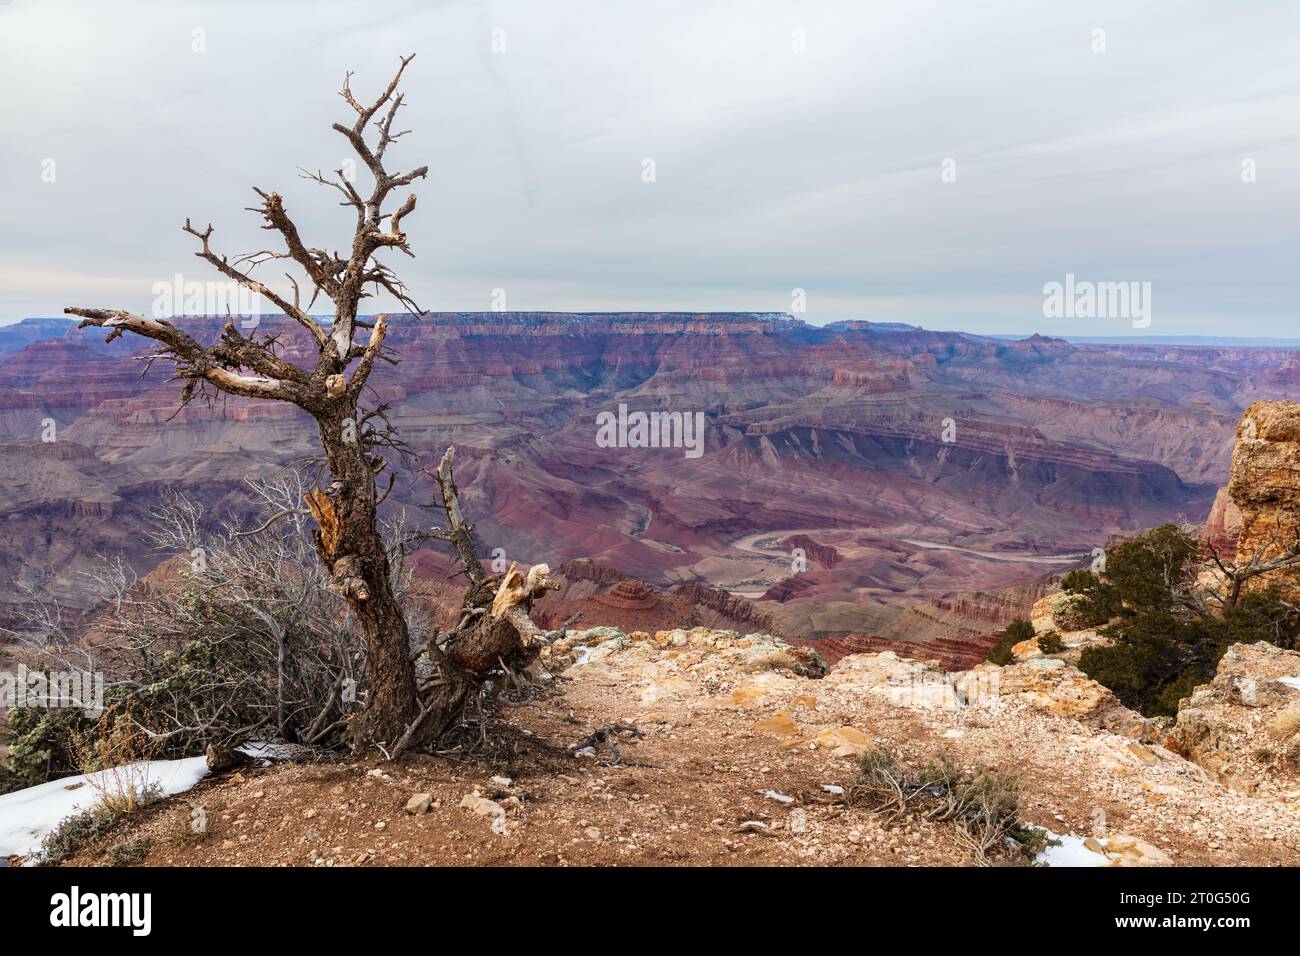 Albero morto in inverno, versante sud del Grand Canyon. Neve a terra. Canyon e cielo nuvoloso sullo sfondo. Foto Stock